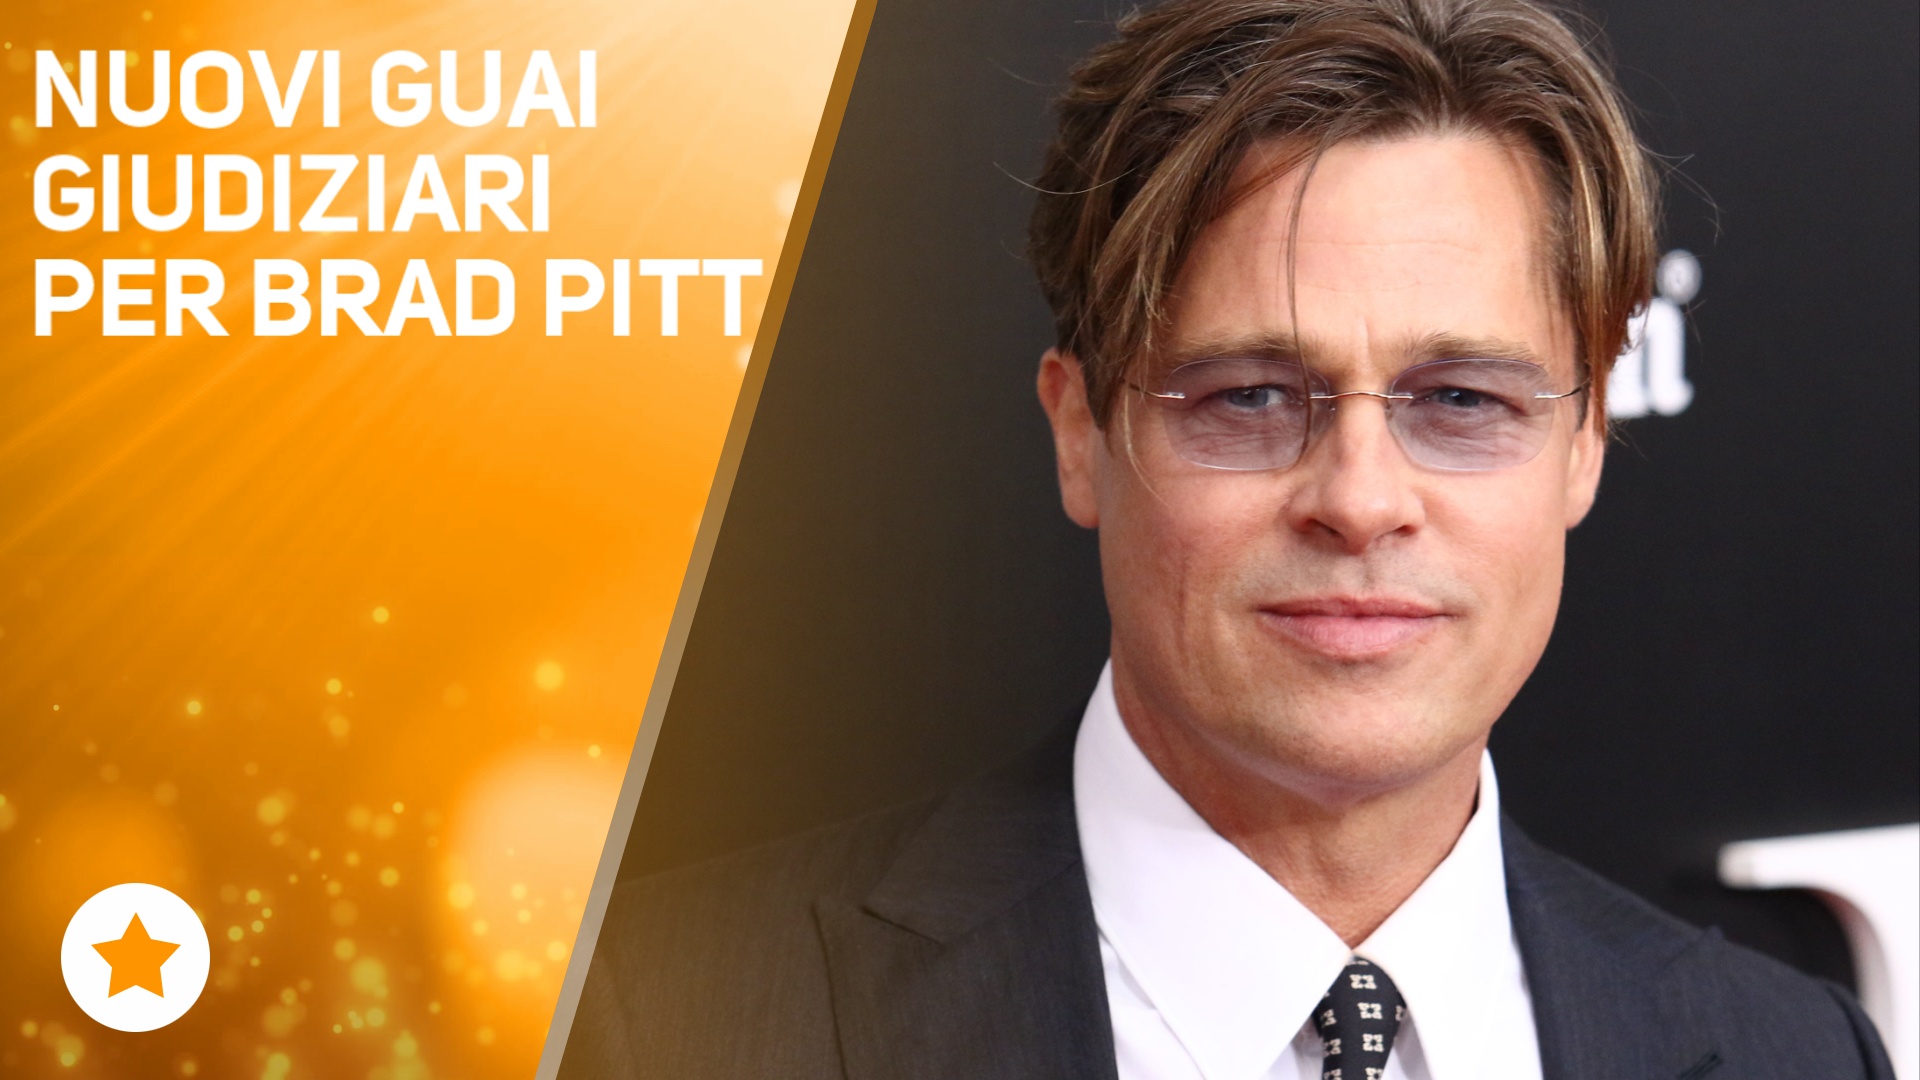 Continuano i problemi giudiziari per Brad Pitt